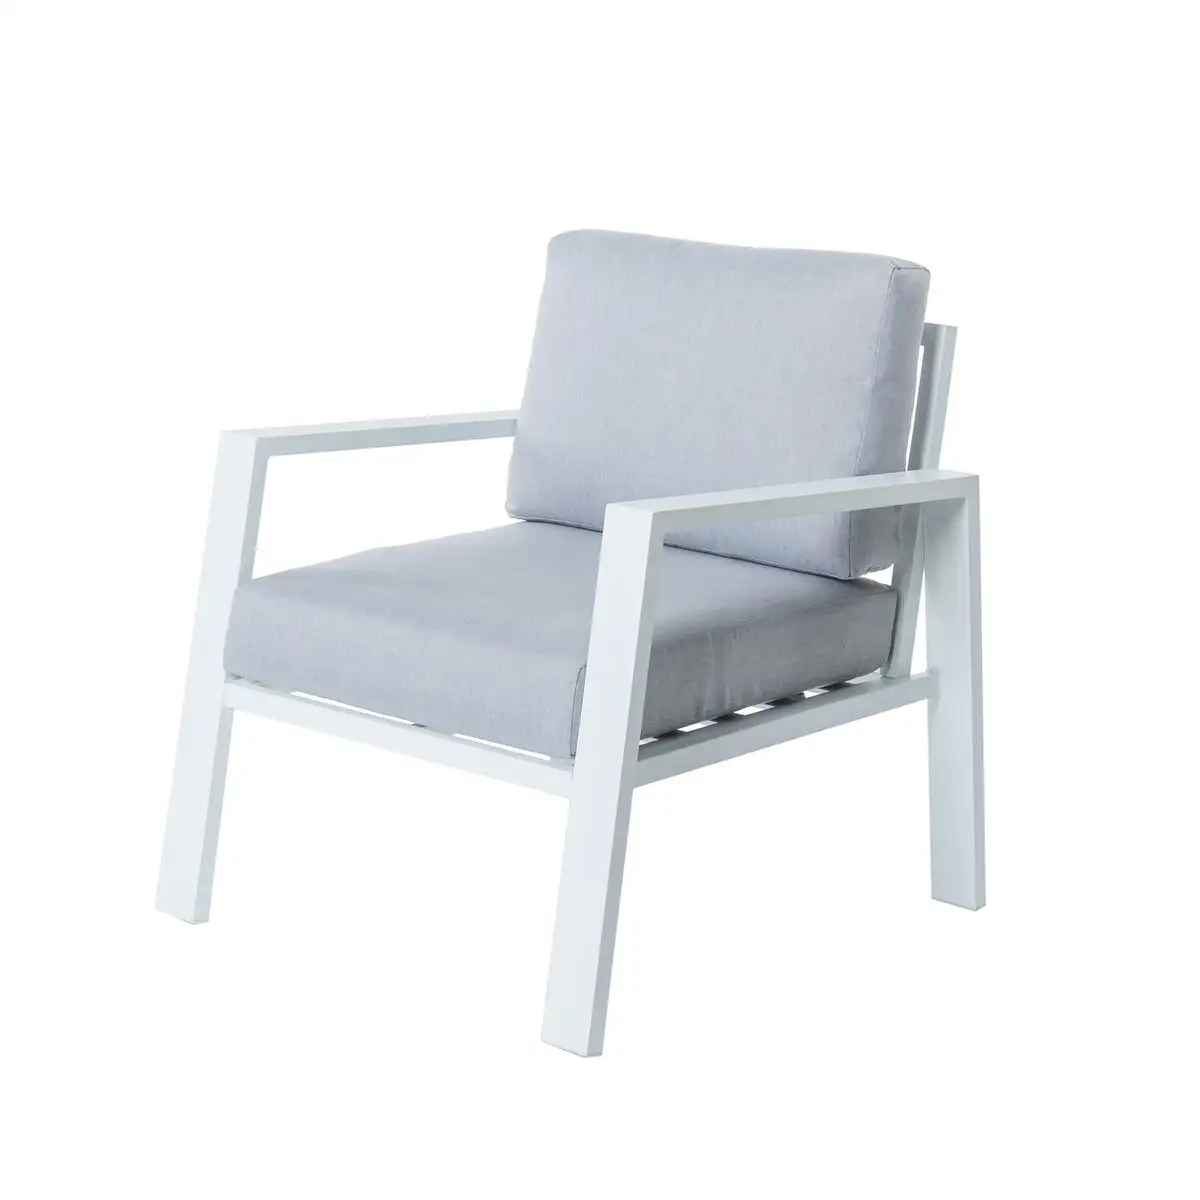 Chaise de jardin thais 73 20 x 74 80 x 73 30 cm aluminium blanc_7861. DIAYTAR SENEGAL - L'Art de Vivre l'Élégance Accessible. Parcourez notre gamme variée et choisissez des produits qui ajoutent une touche de sophistication à votre style.